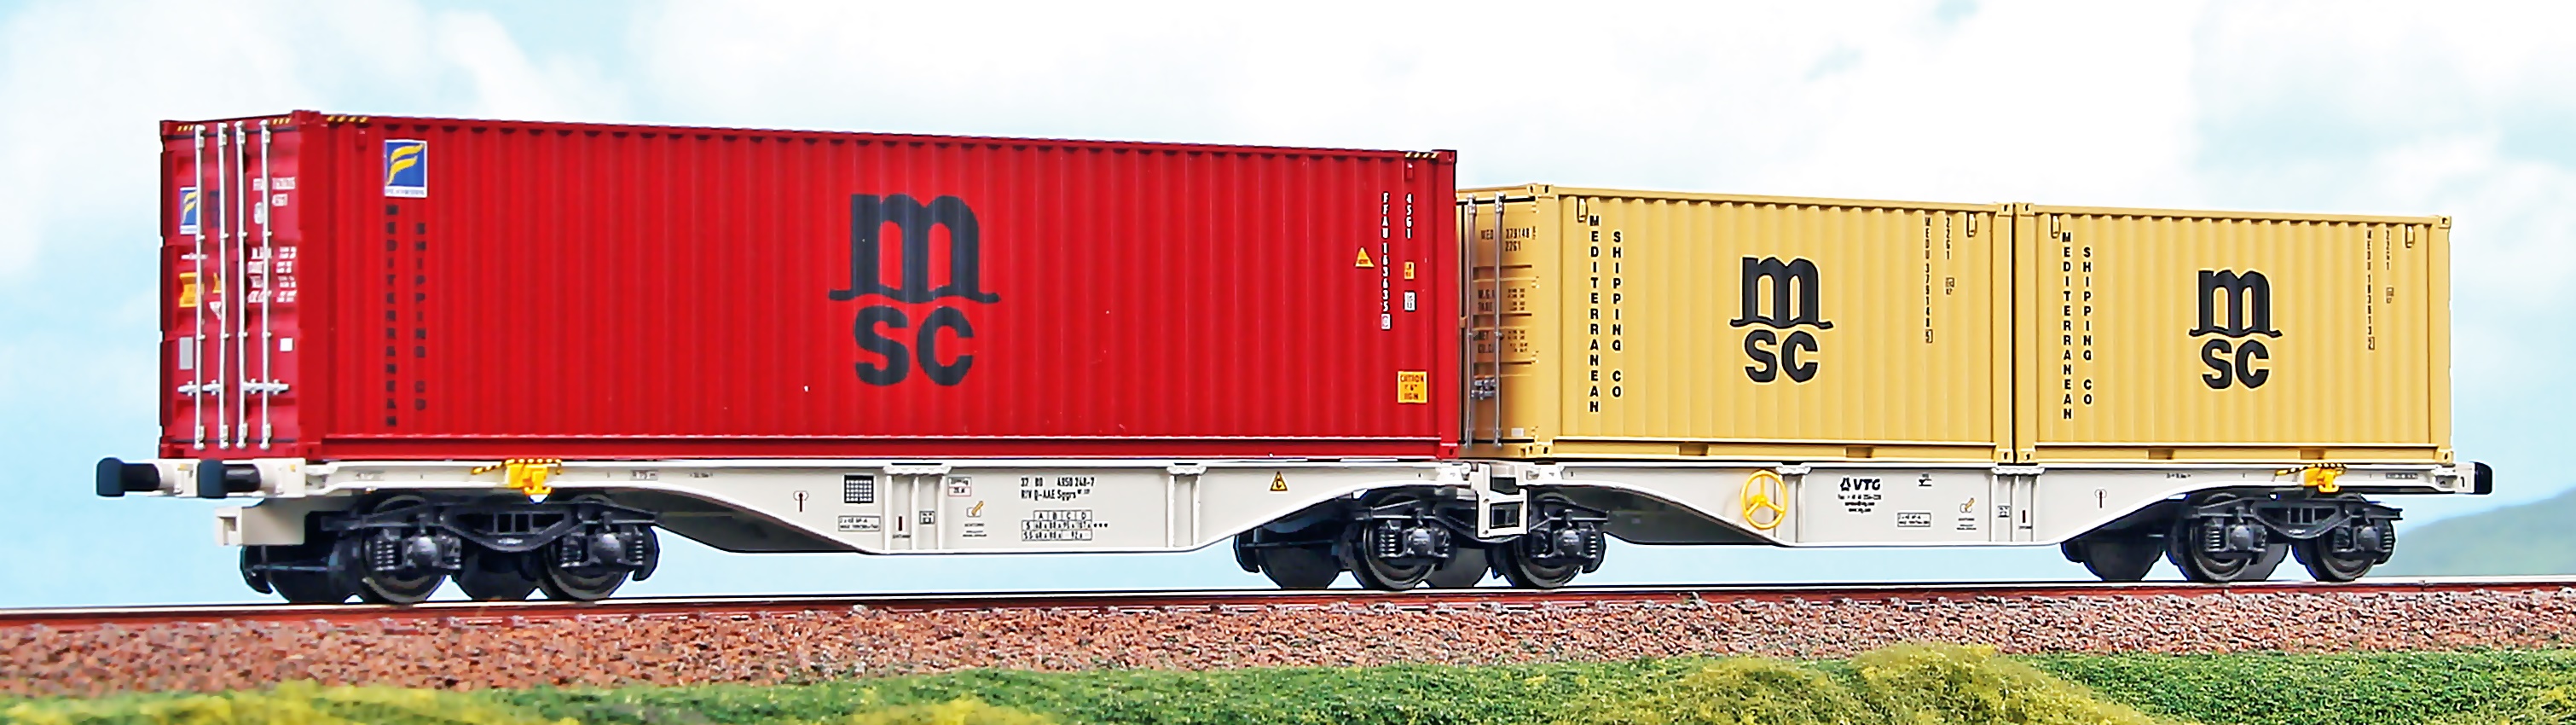 VTG Containertragwagen Ep5-6 Sggrs 80’, beladen mit 1x 40´ Containern MSC rot und 2x 20´ Container MSC beige